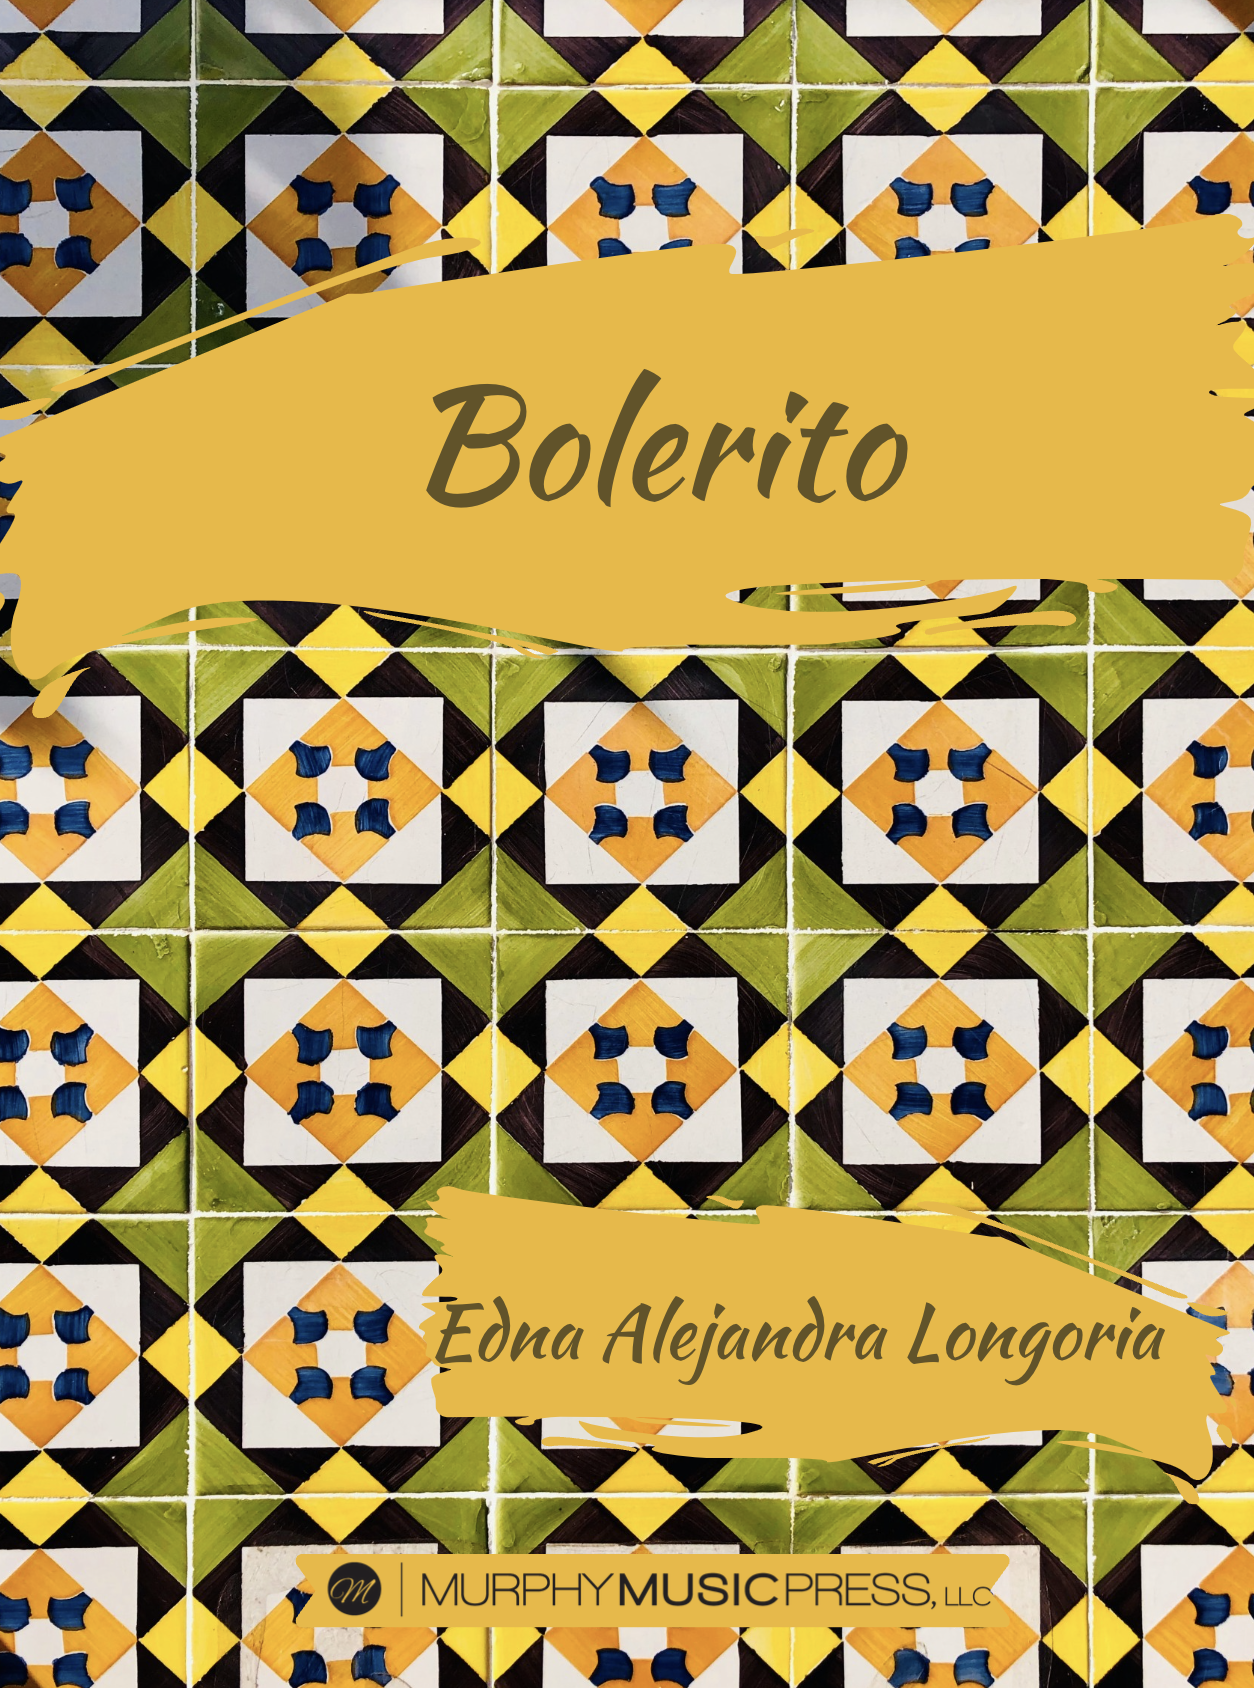 Bolerito by Edna Alejandra Longoria